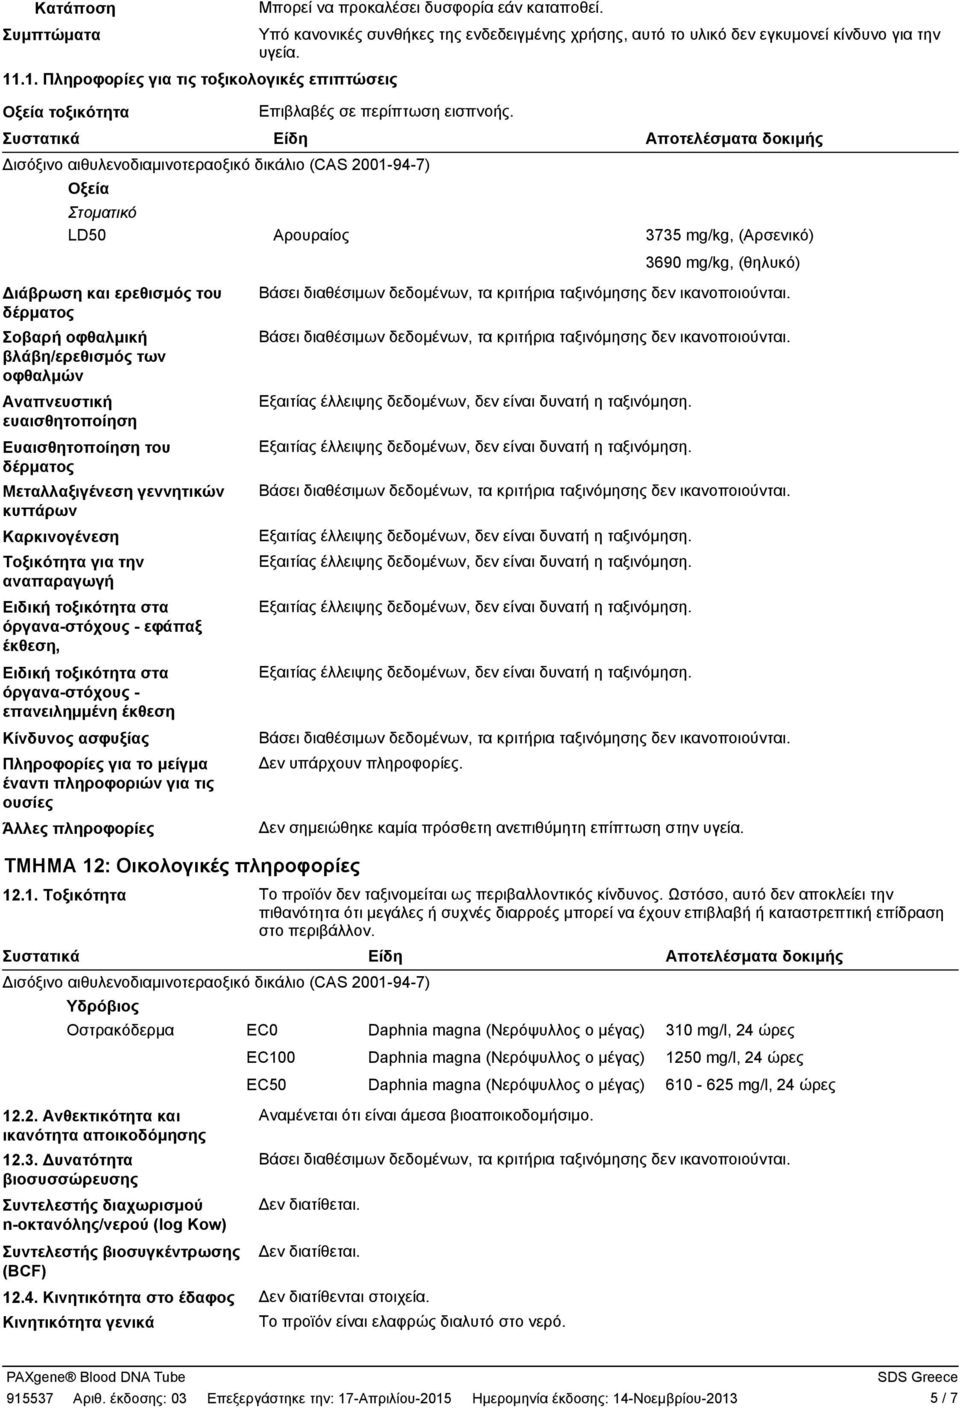 Συστατικά Είδη ισόξινο αιθυλενοδιαμινοτεραοξικό δικάλιο (CAS 2001-94-7) Οξεία Στοματικό LD50 Αρουραίος Αποτελέσματα δοκιμής 3735 mg/kg, (Αρσενικό) 3690 mg/kg, (θηλυκό) ιάβρωση και ερεθισμός του